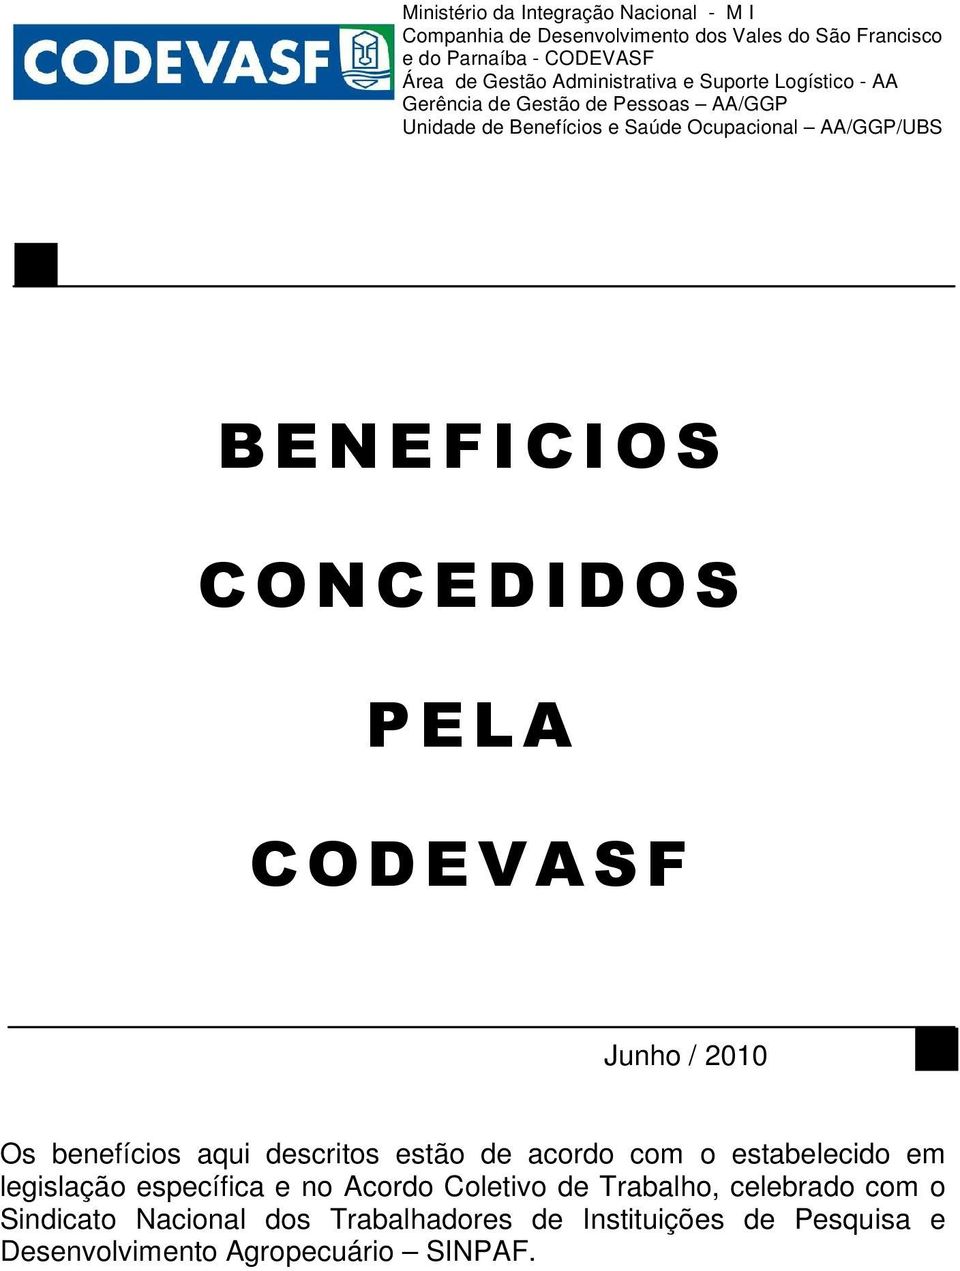 BENEFICIOS CONCEDIDOS PELA CODEVASF Junho / 2010 Os benefícios aqui descritos estão de acordo com o estabelecido em legislação específica e